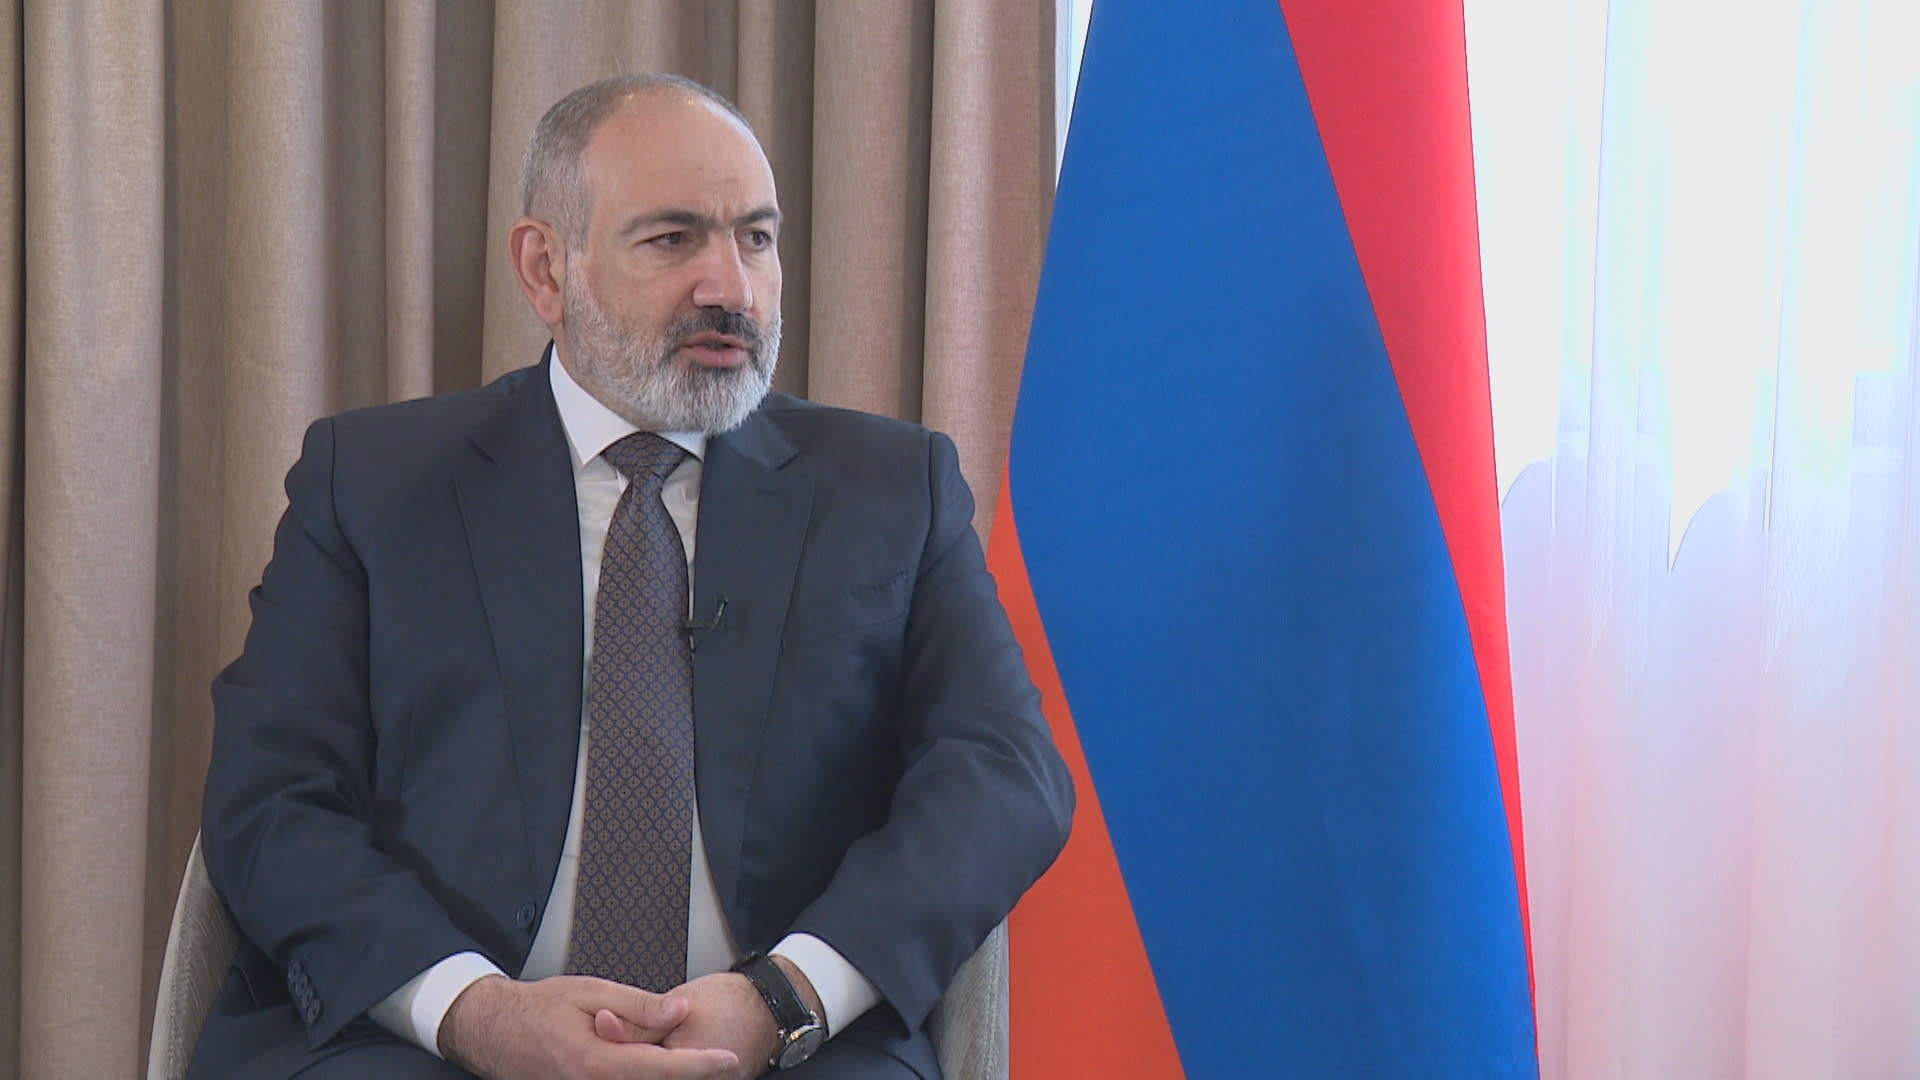 Arménský premiér Nikol Pašinjan v rozhovoru pro CNN Prima NEWS s vedoucím zahraniční redakce Matyášem Zrnem.